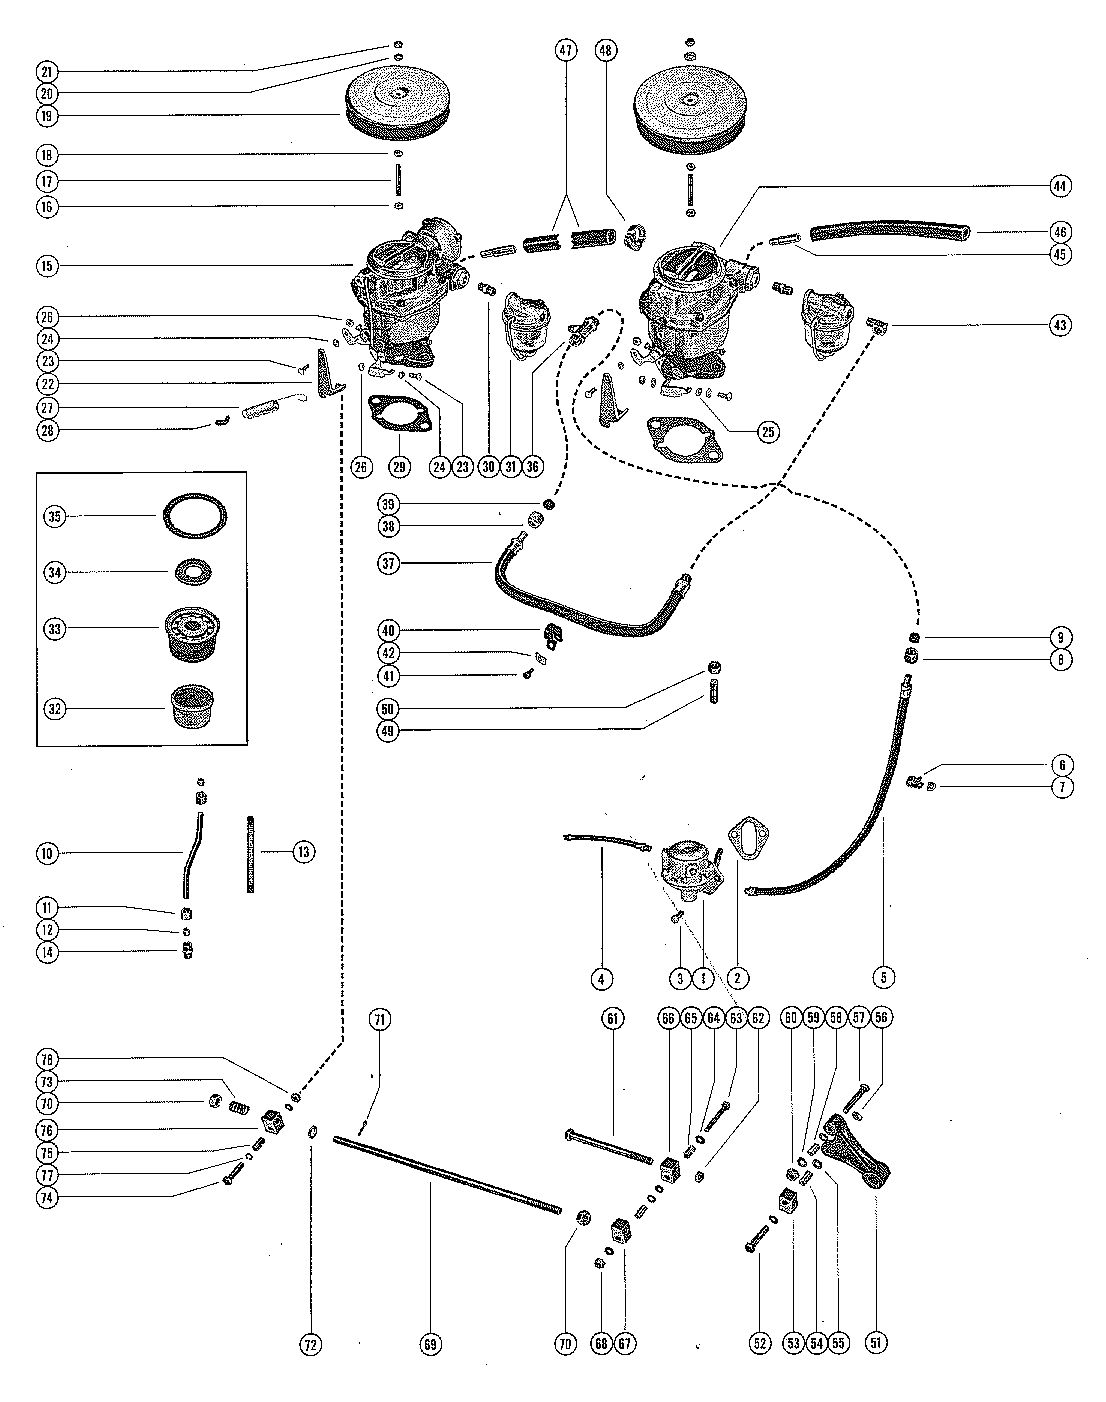 MERCRUISER 140 ENGINE (6 CYLINDER) FUEL PUMP, FUEL FILTER AND CARBURETOR